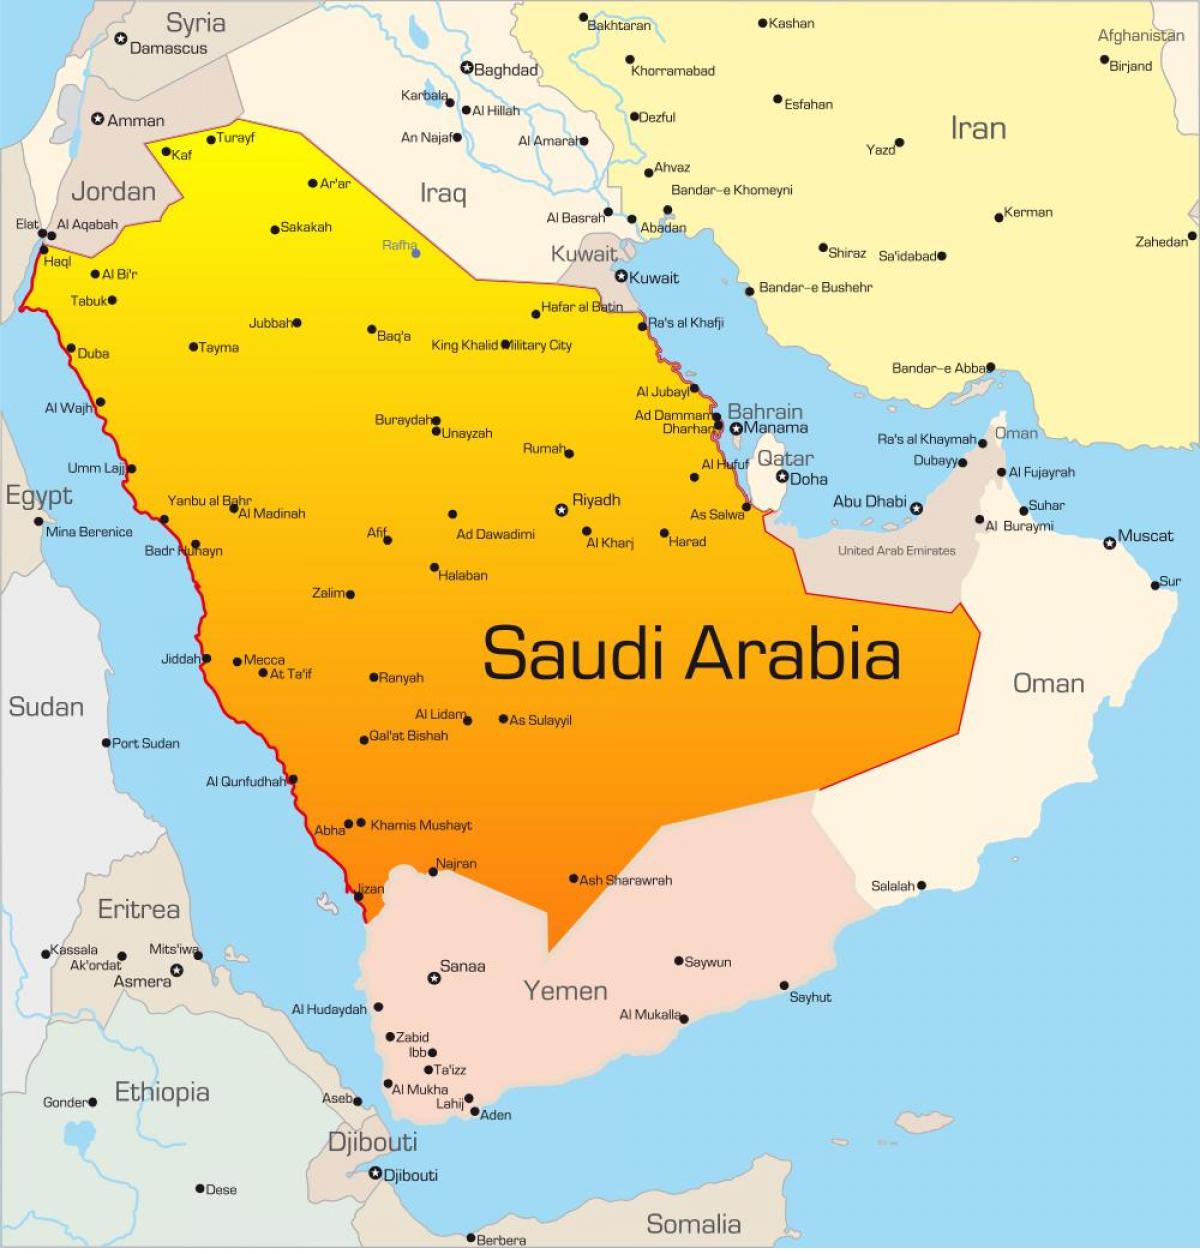 मक्का सऊदी अरब के नक्शे